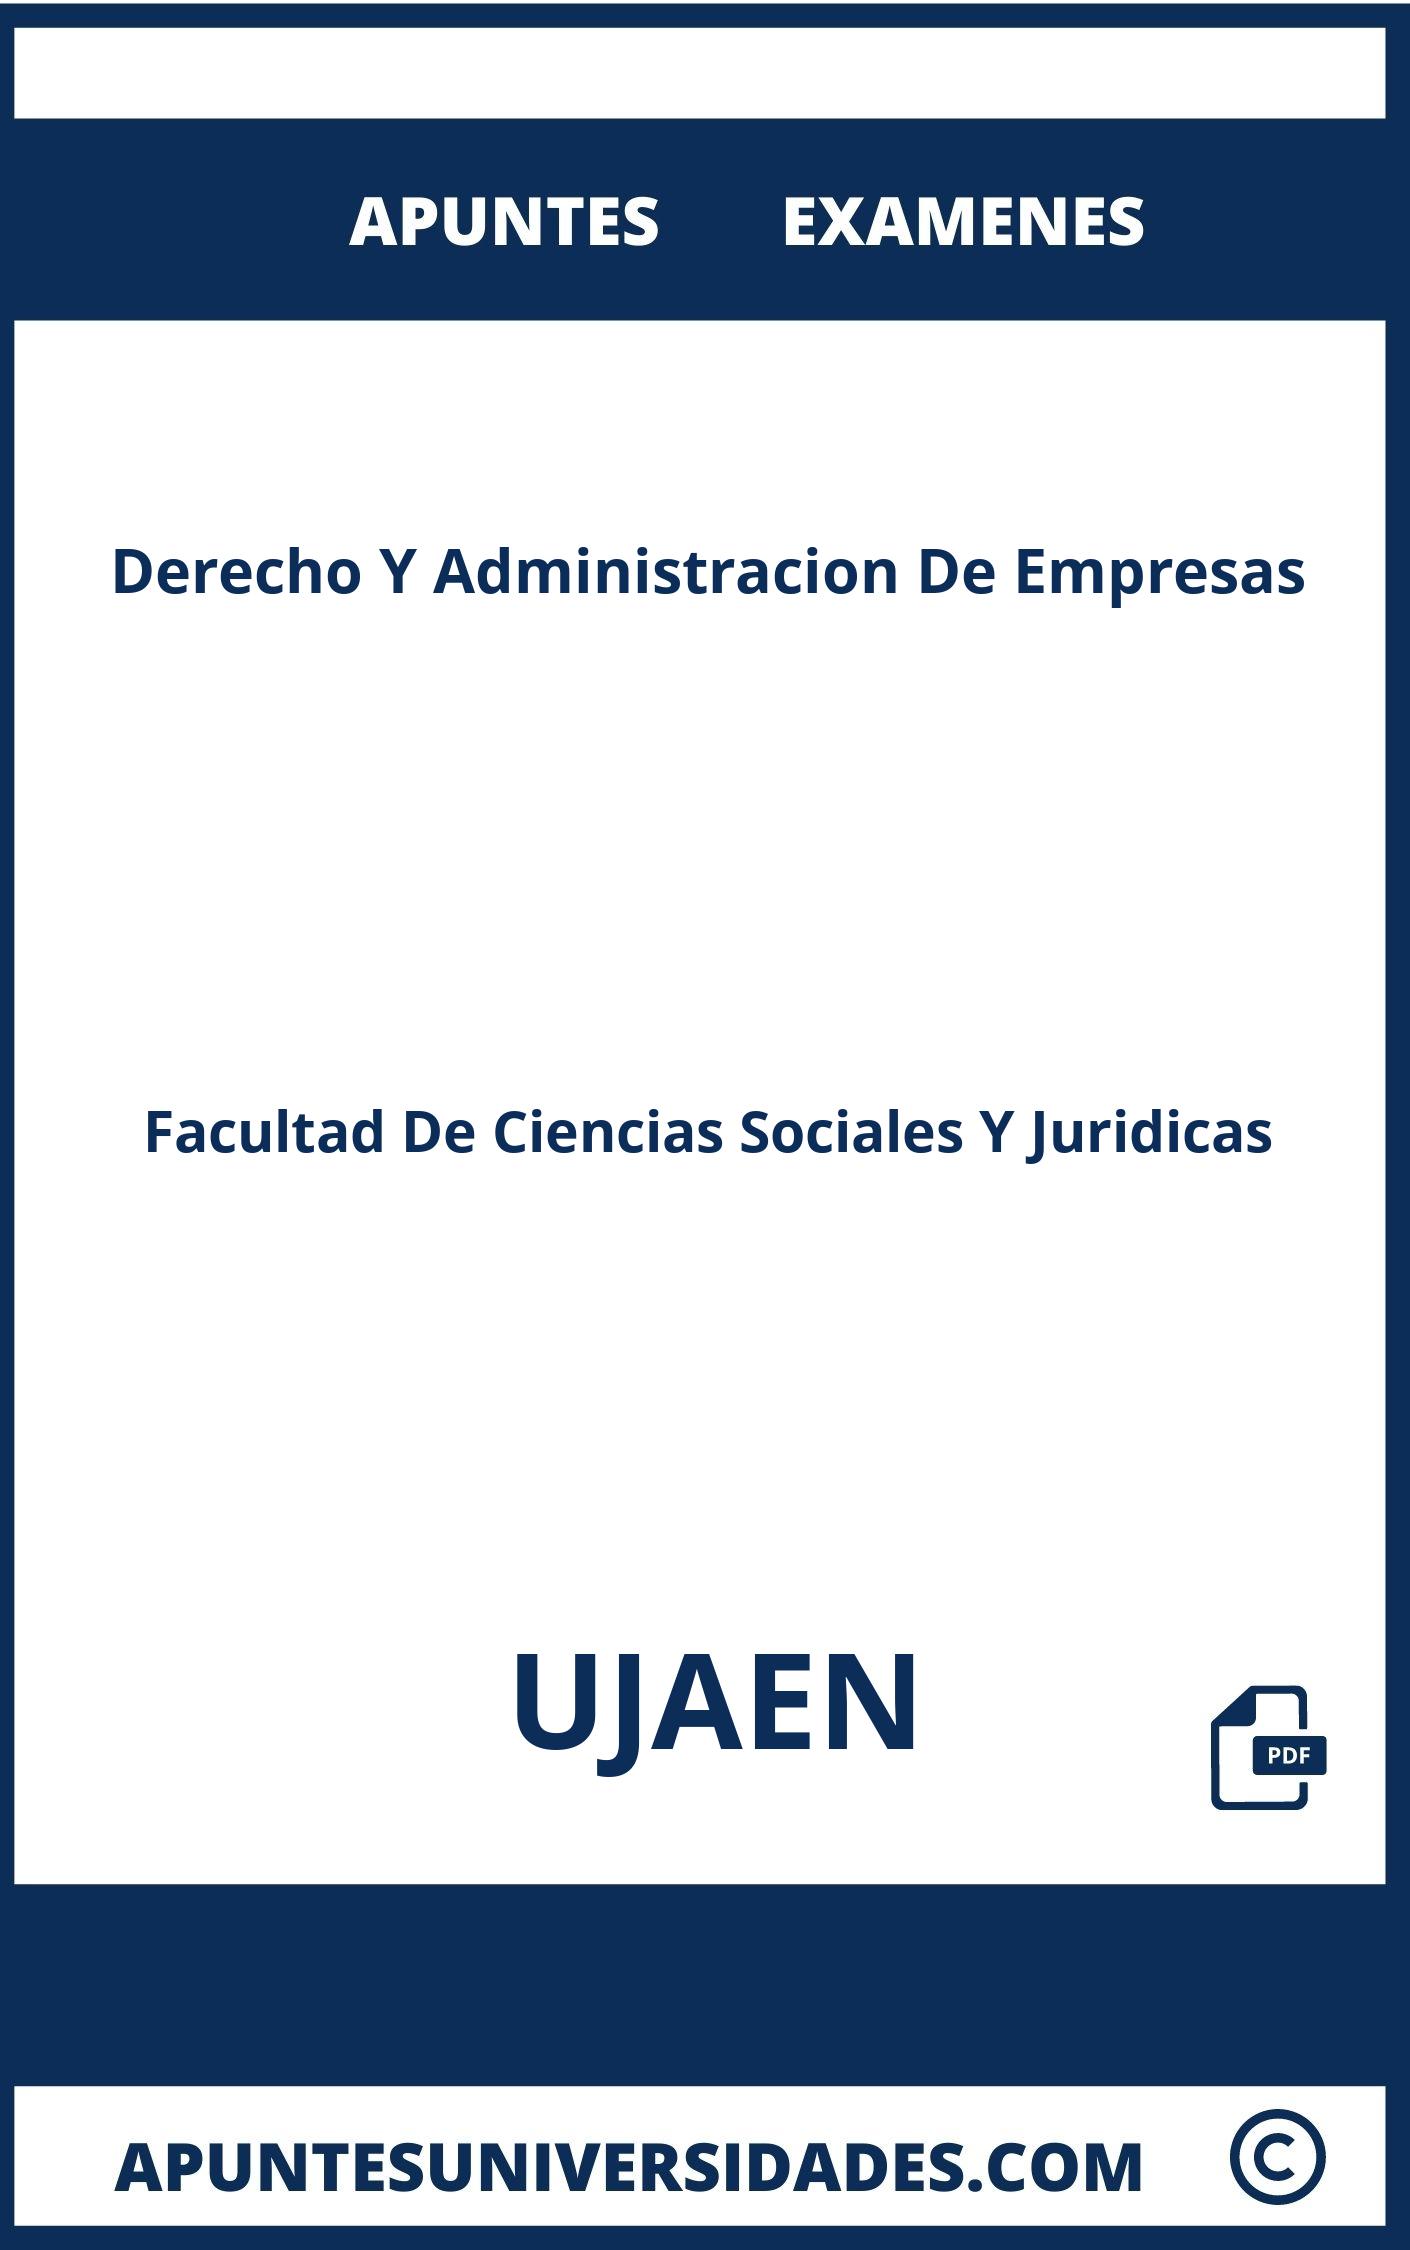 Apuntes Derecho Y Administracion De Empresas UJAEN y Examenes